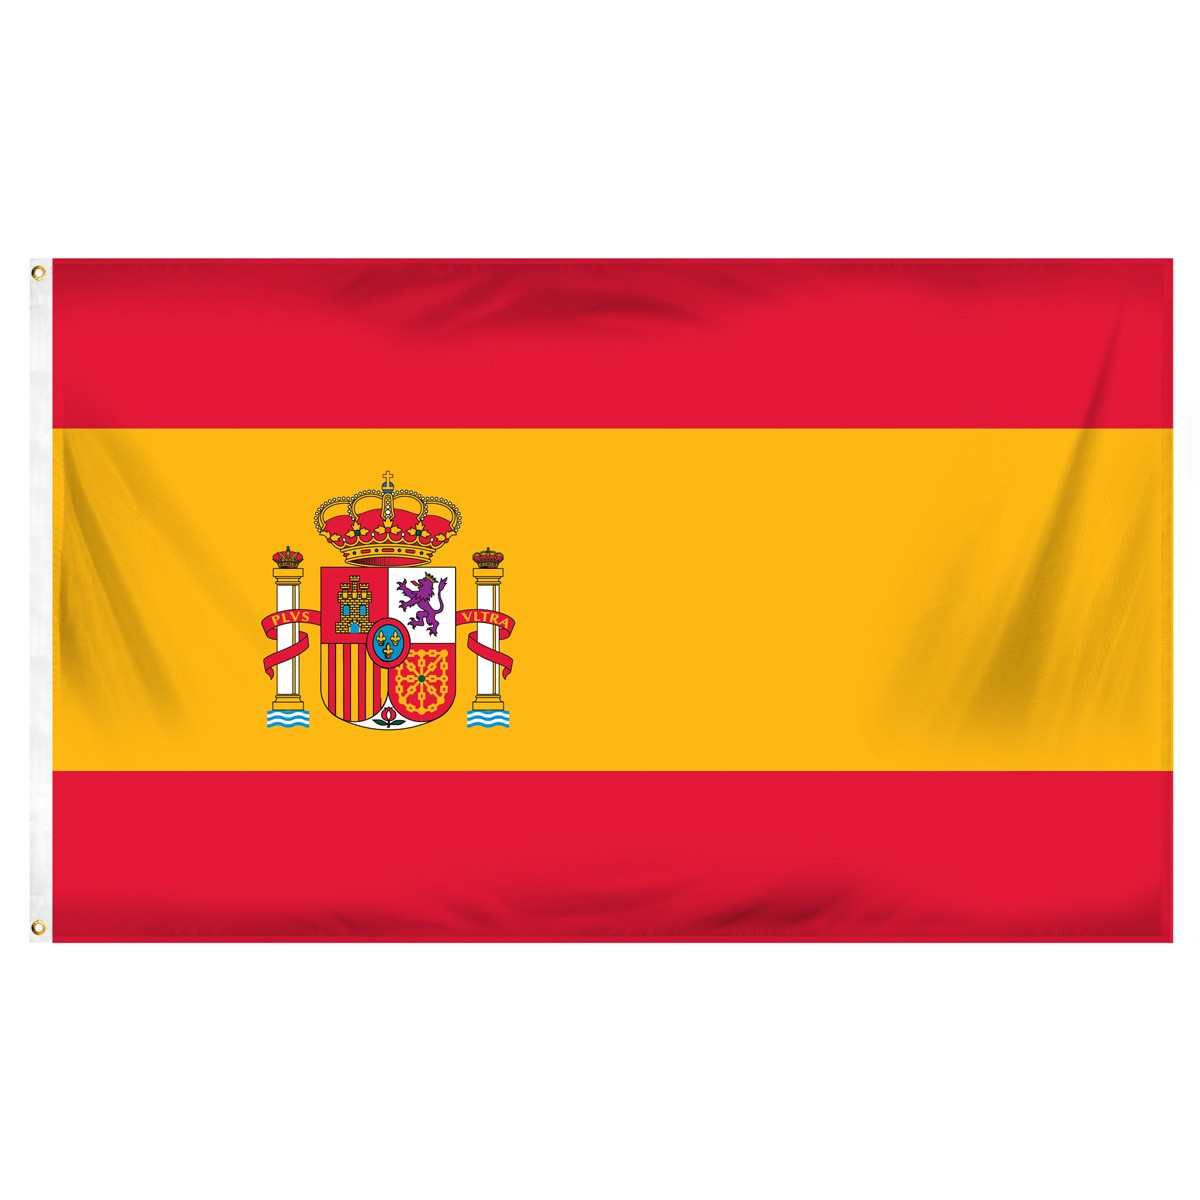 Spain Executive Flags